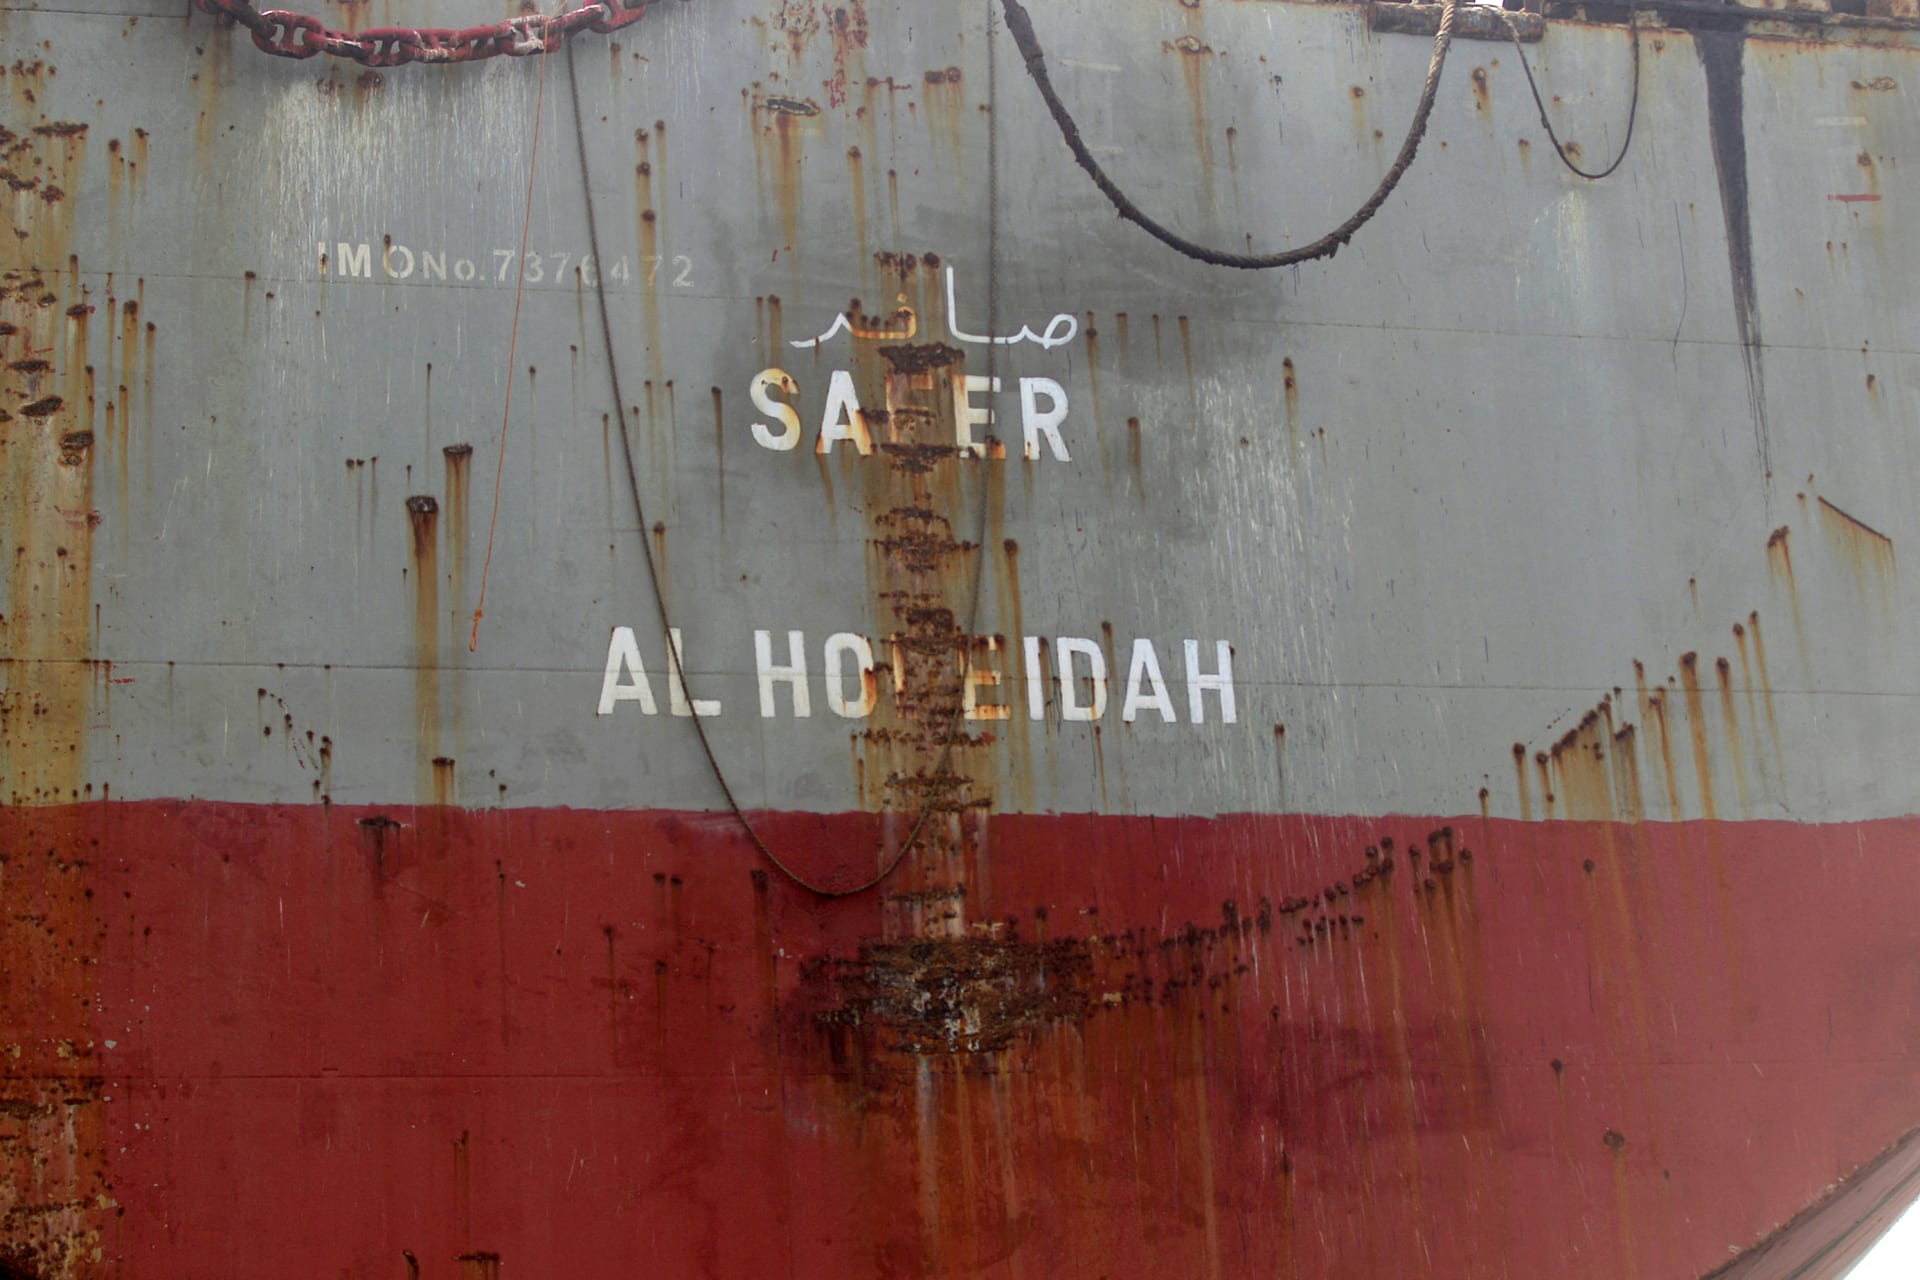 السعودية تعلق على إعلان اكتمال سحب النفط الخام من الخزان "صافر"